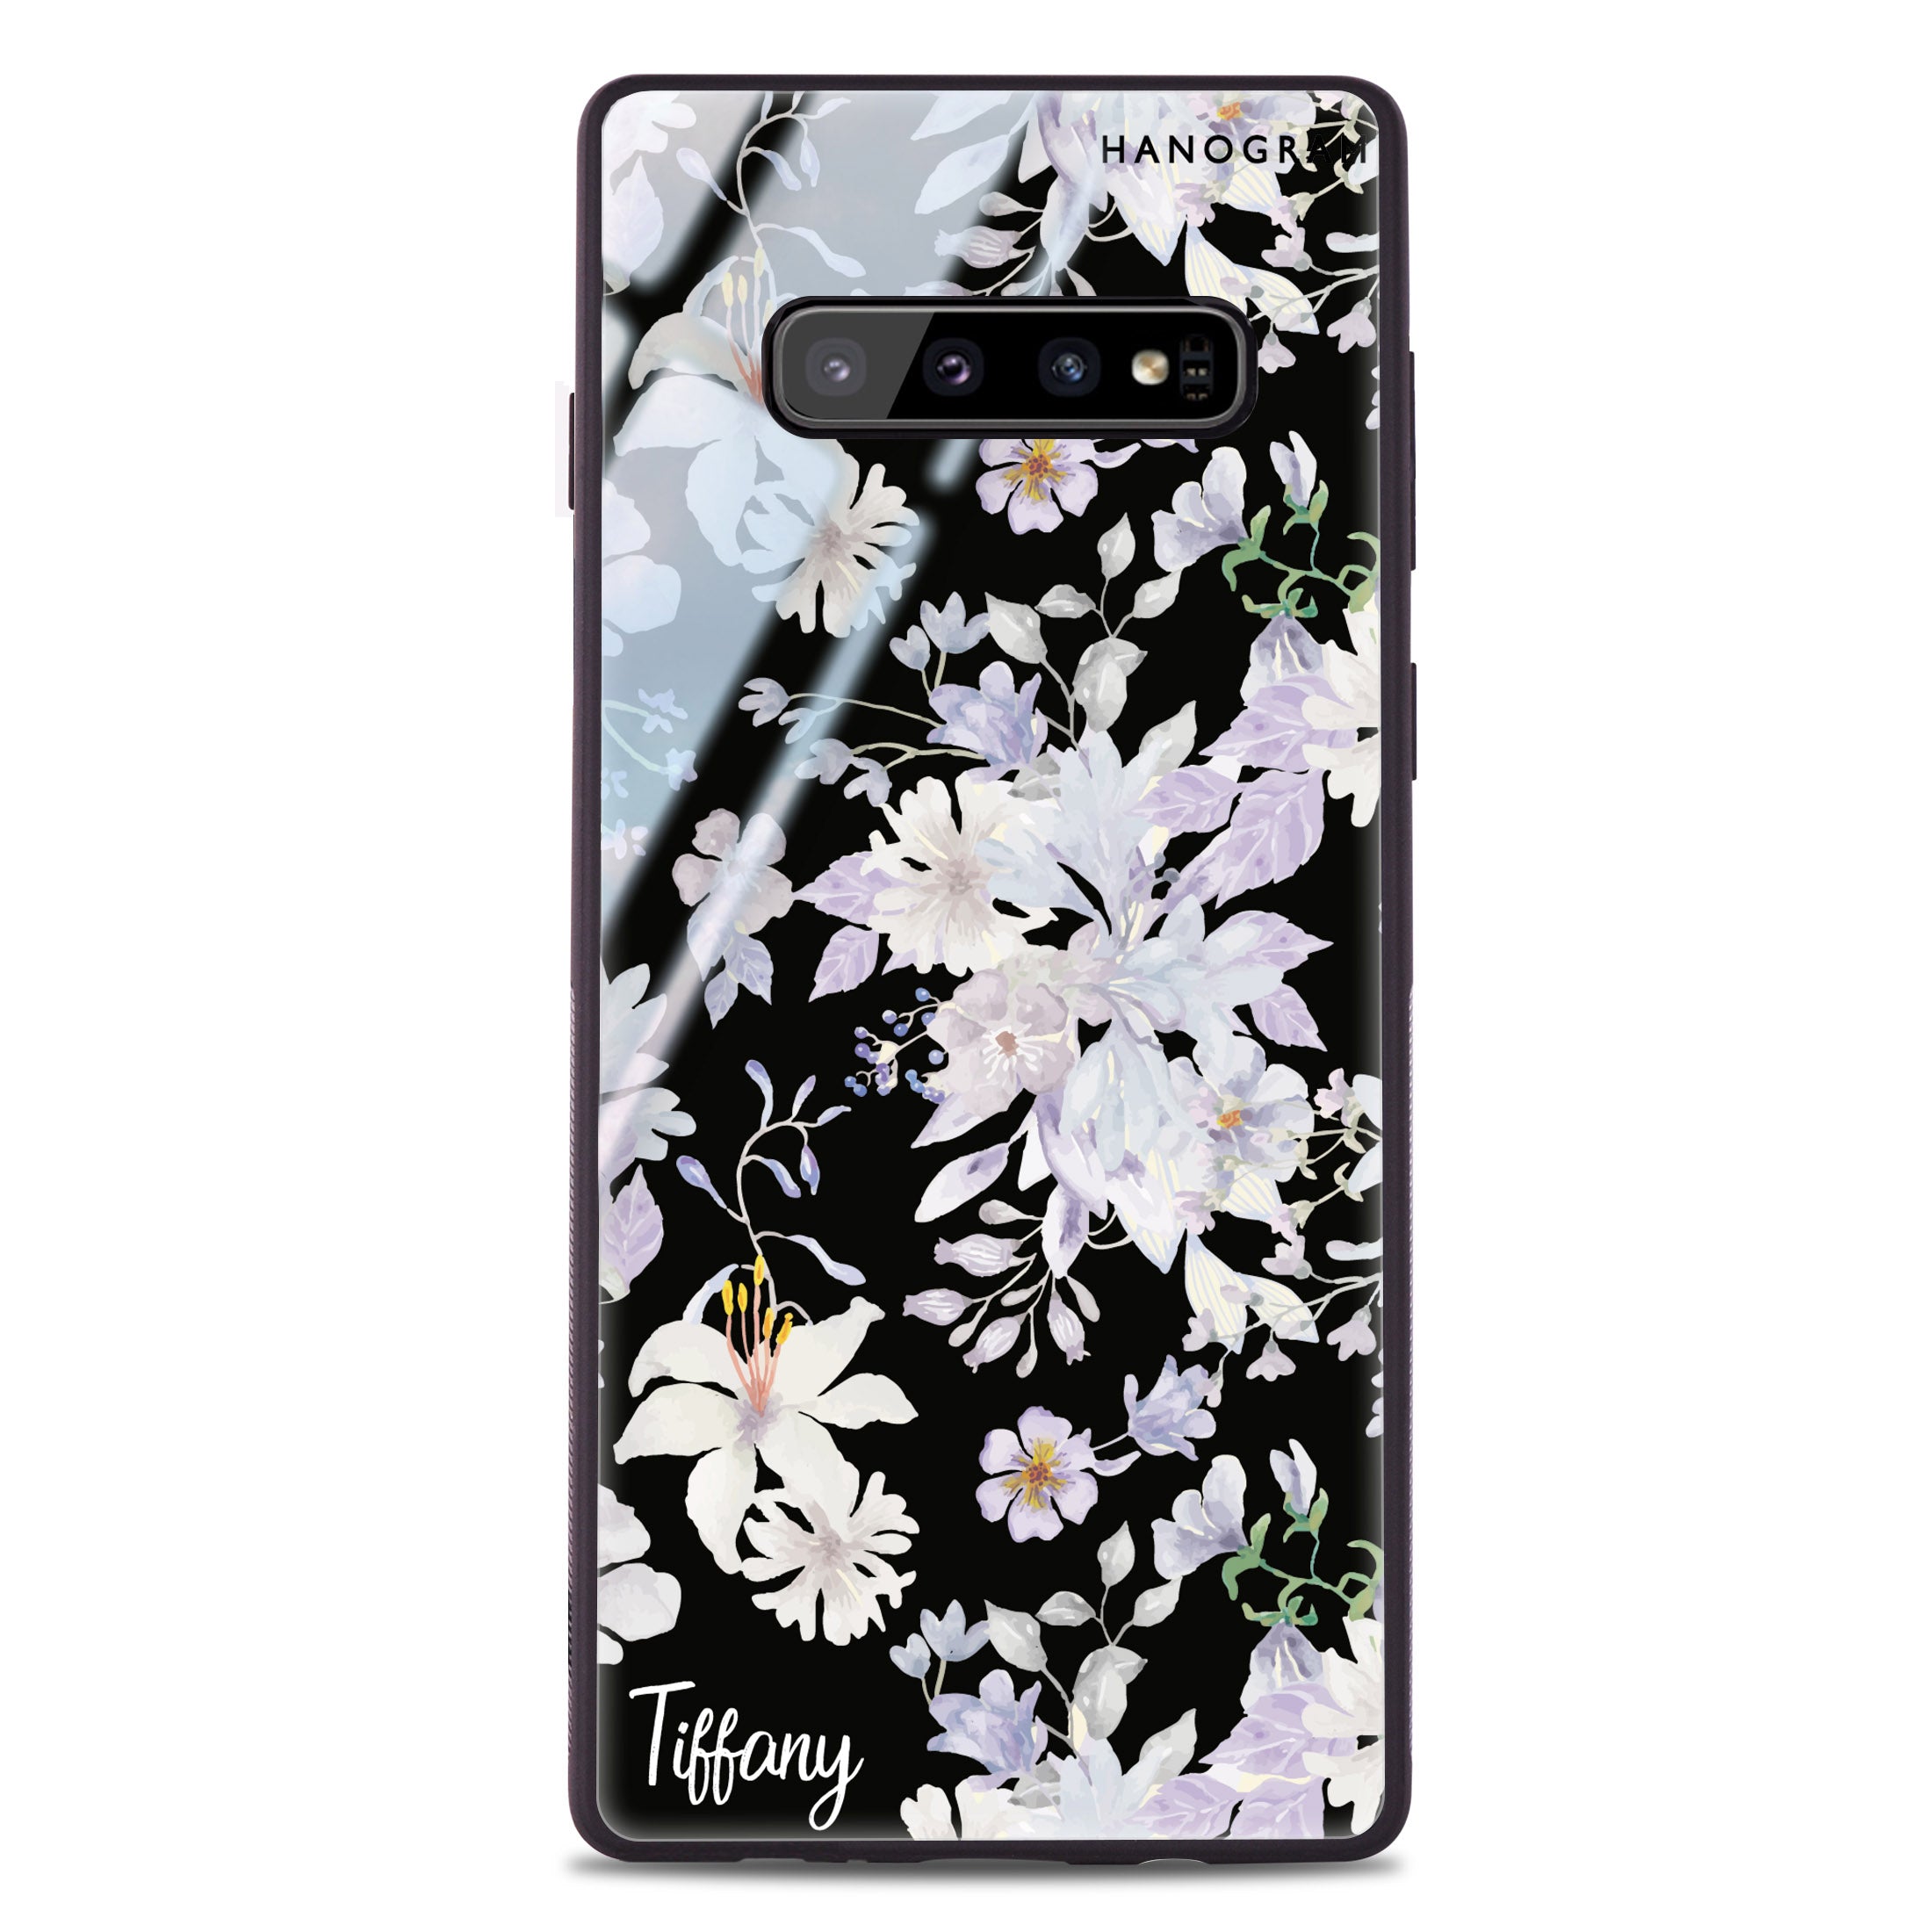 Moth pattern on dark grey Samsung S10 Case